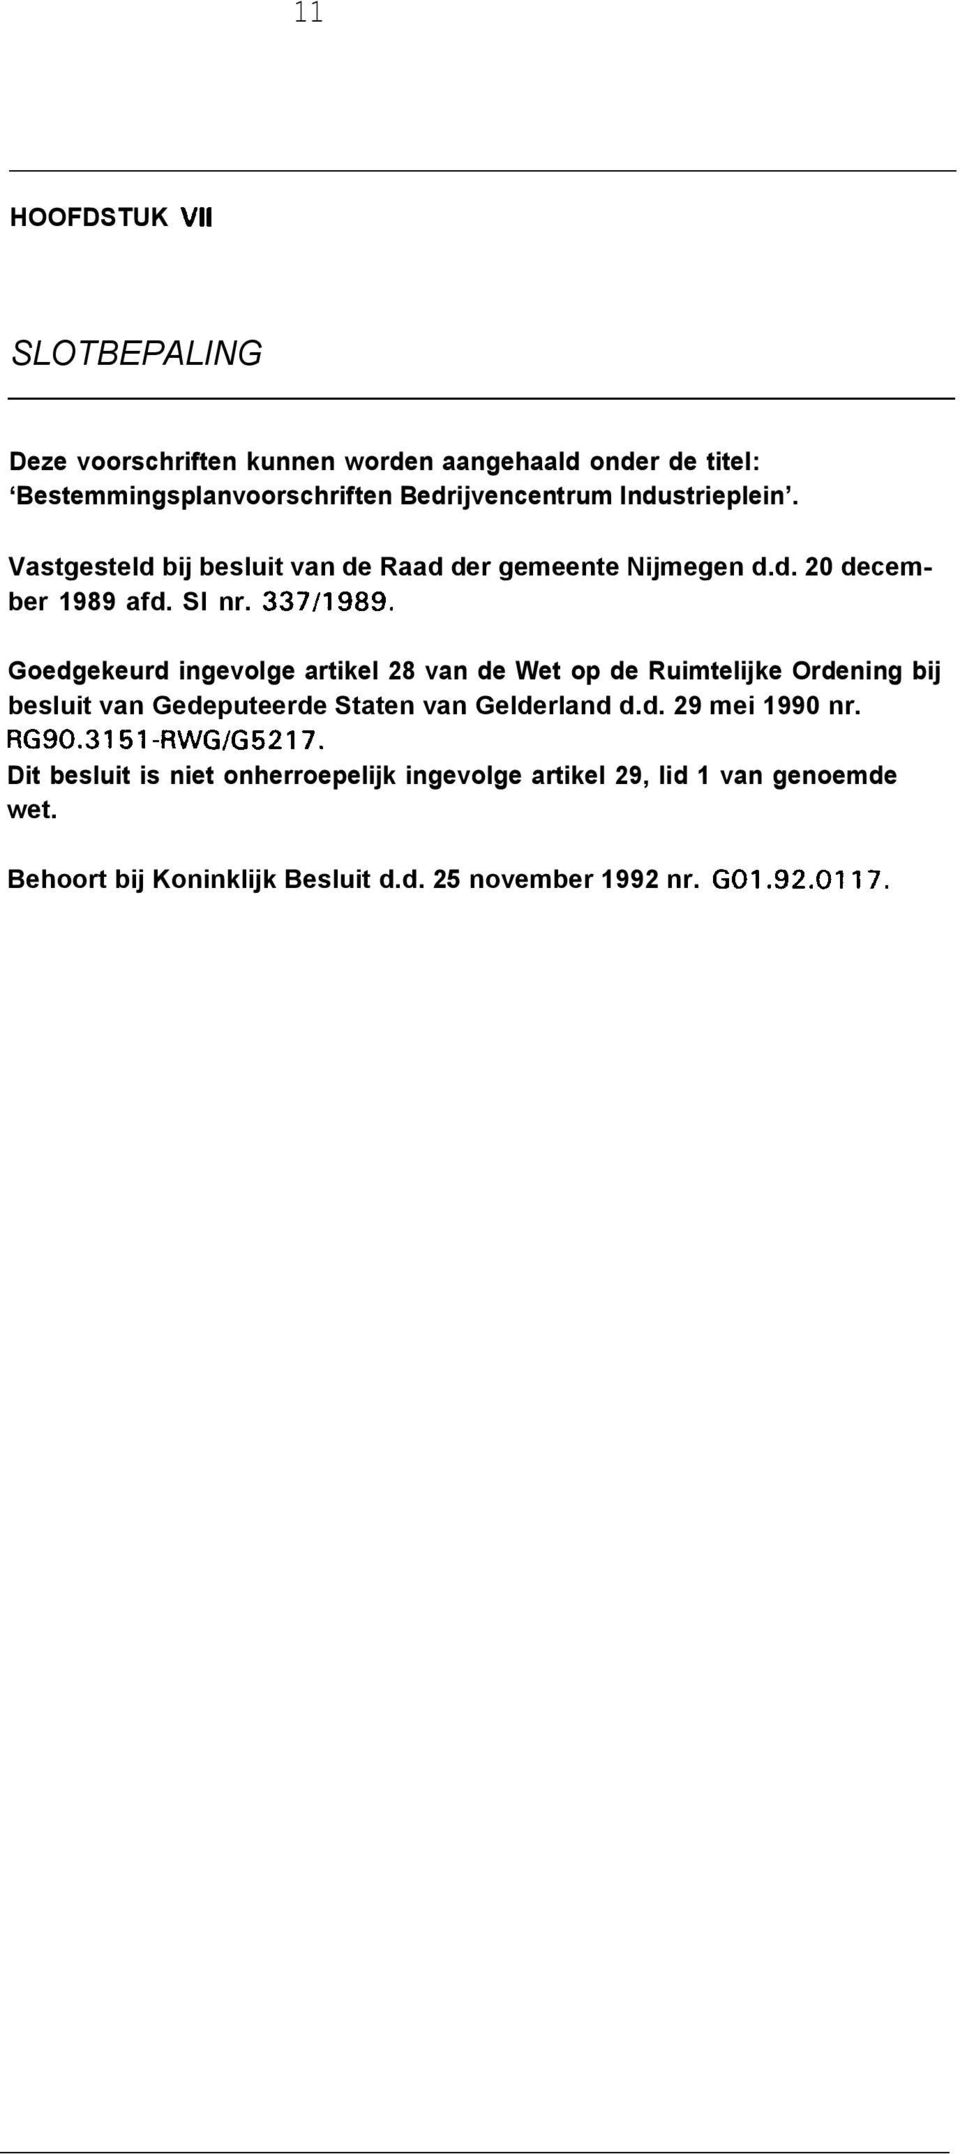 Goedgekeurd ingevolge artikel 28 van de Wet op de Ruimtelijke Ordening bij besluit van Gedeputeerde Staten van Gelderland d.d. 29 mei 1990 nr.